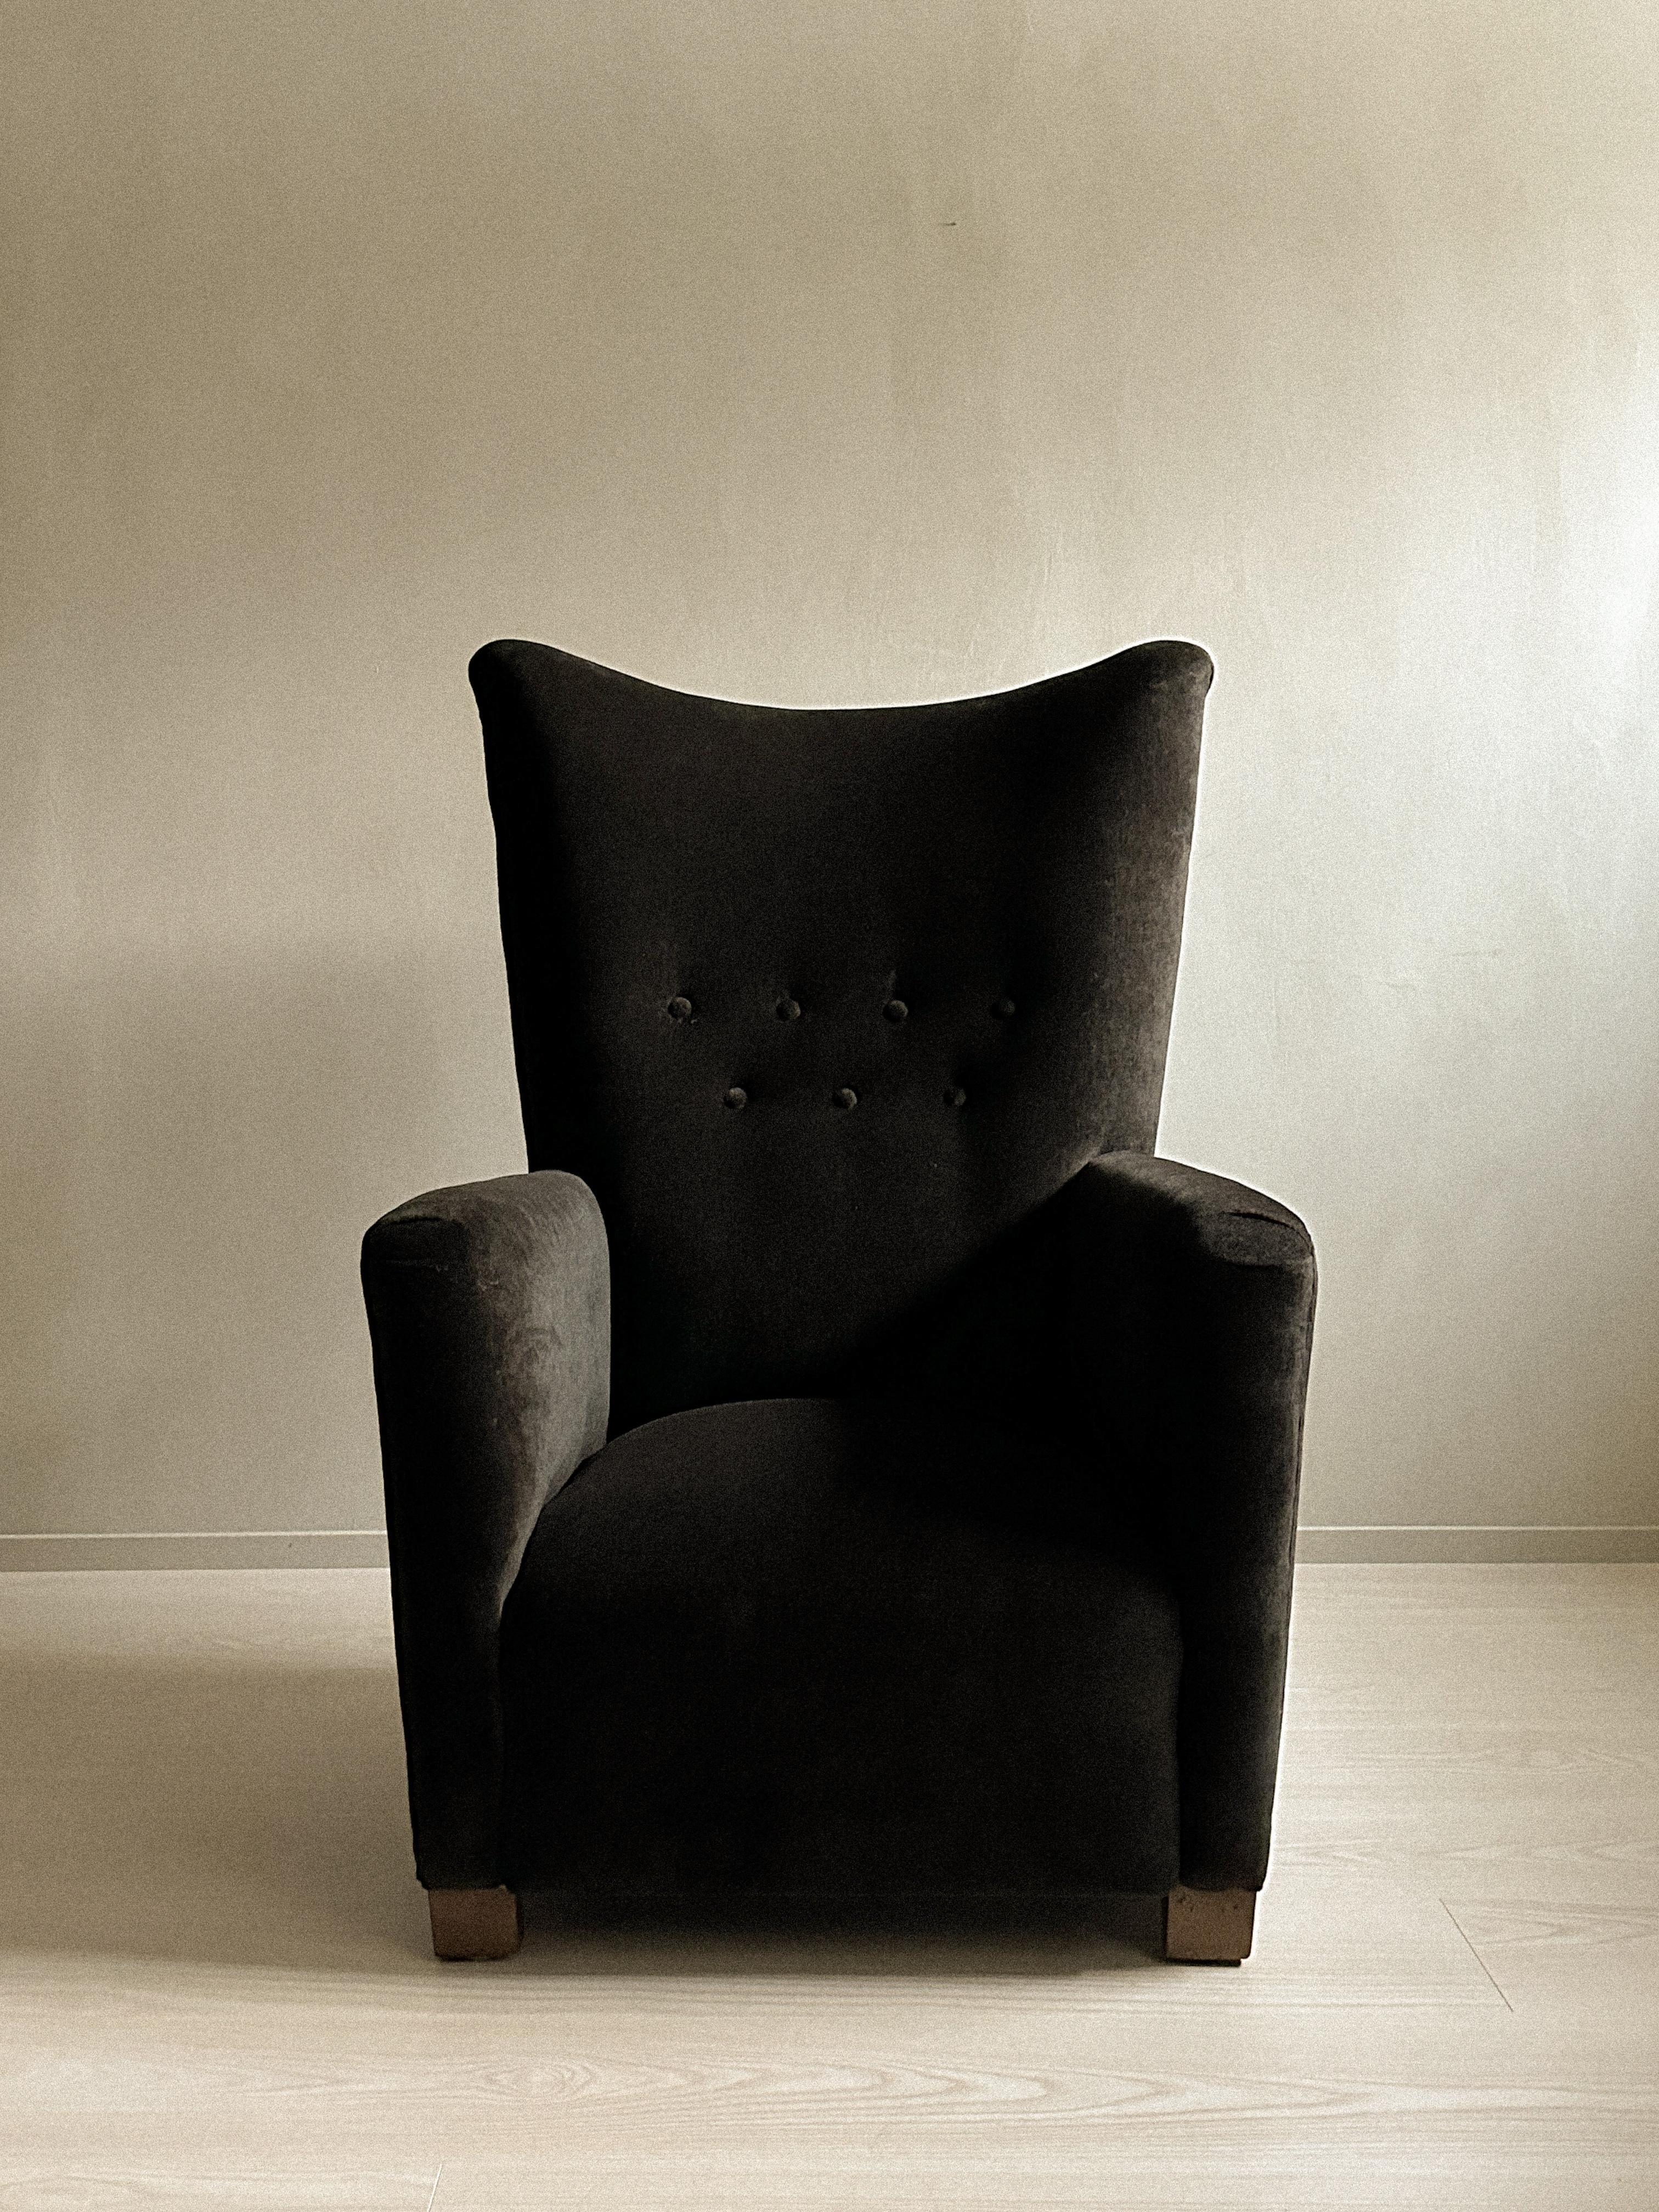 Les designs pratiques et confortables des ébénistes danois ont défini les sièges modernes du milieu du 20e siècle. Les ébénistes danois se sont concentrés sur le design minimaliste exécuté par des artisans hautement qualifiés. La chaise a été